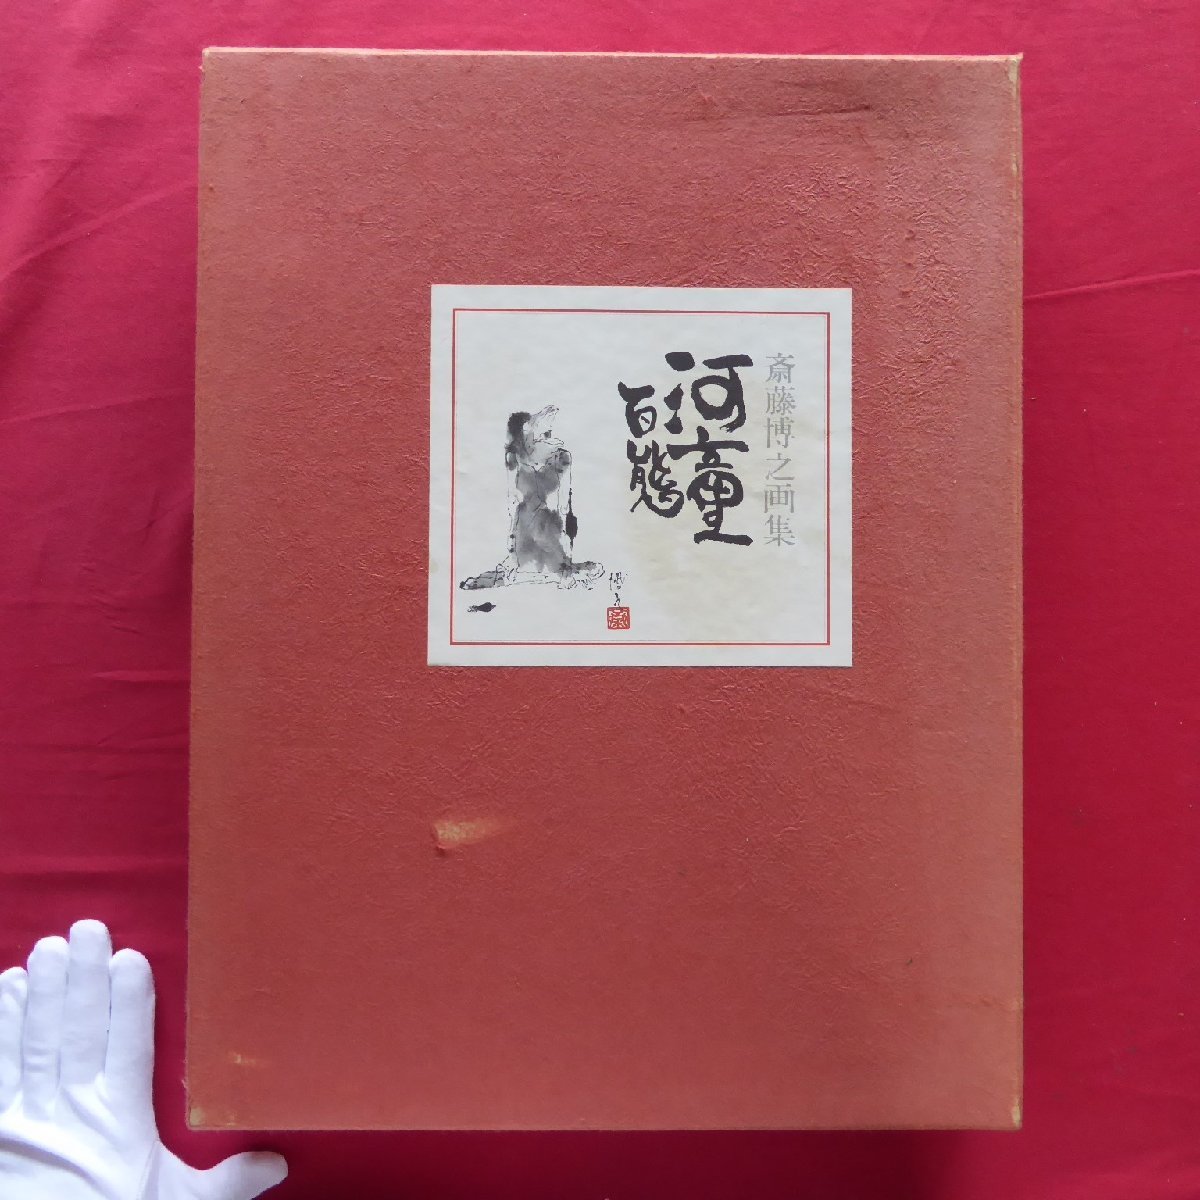 बड़ा मीटर [सैतो हिरोयुकी कला संग्रह - कप्पा अपने सभी रूपों में / 30 प्रतियों तक सीमित, नं. 13/12 प्लेट्स/1 मूल स्याही चित्र/1973, इवासाकी शोटेन】, चित्रकारी, कला पुस्तक, संग्रह, कला पुस्तक